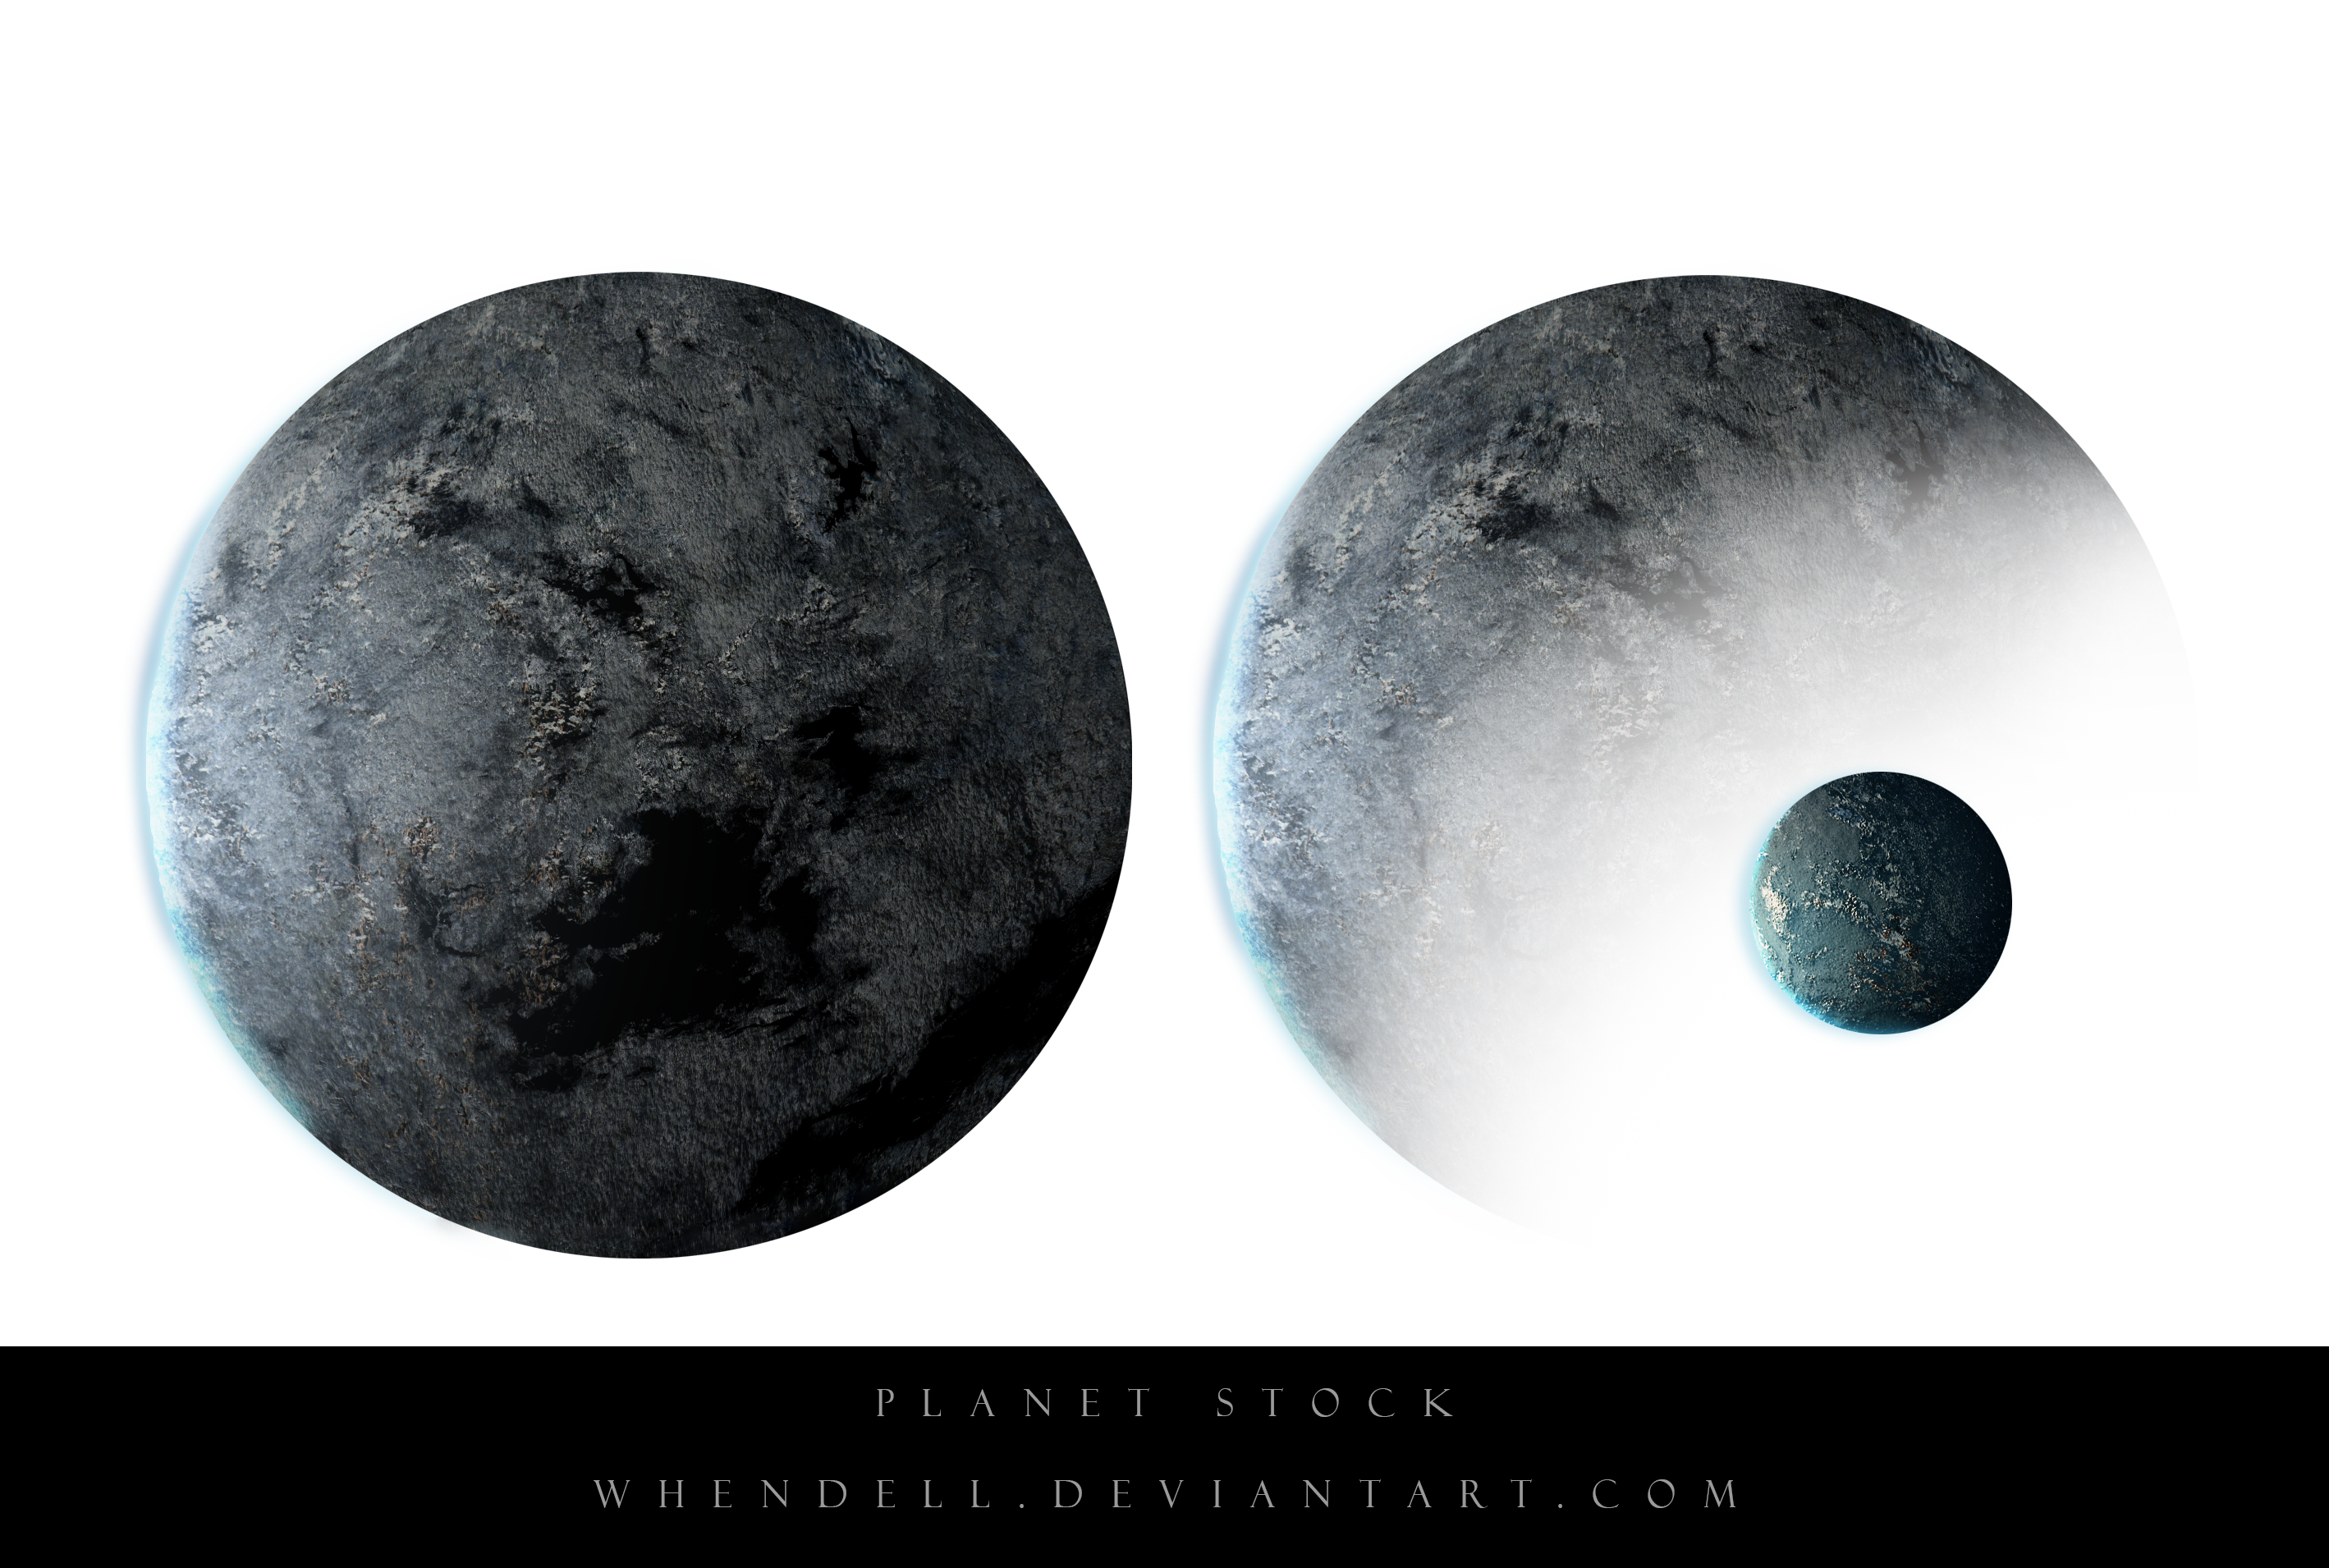 Planet Stock